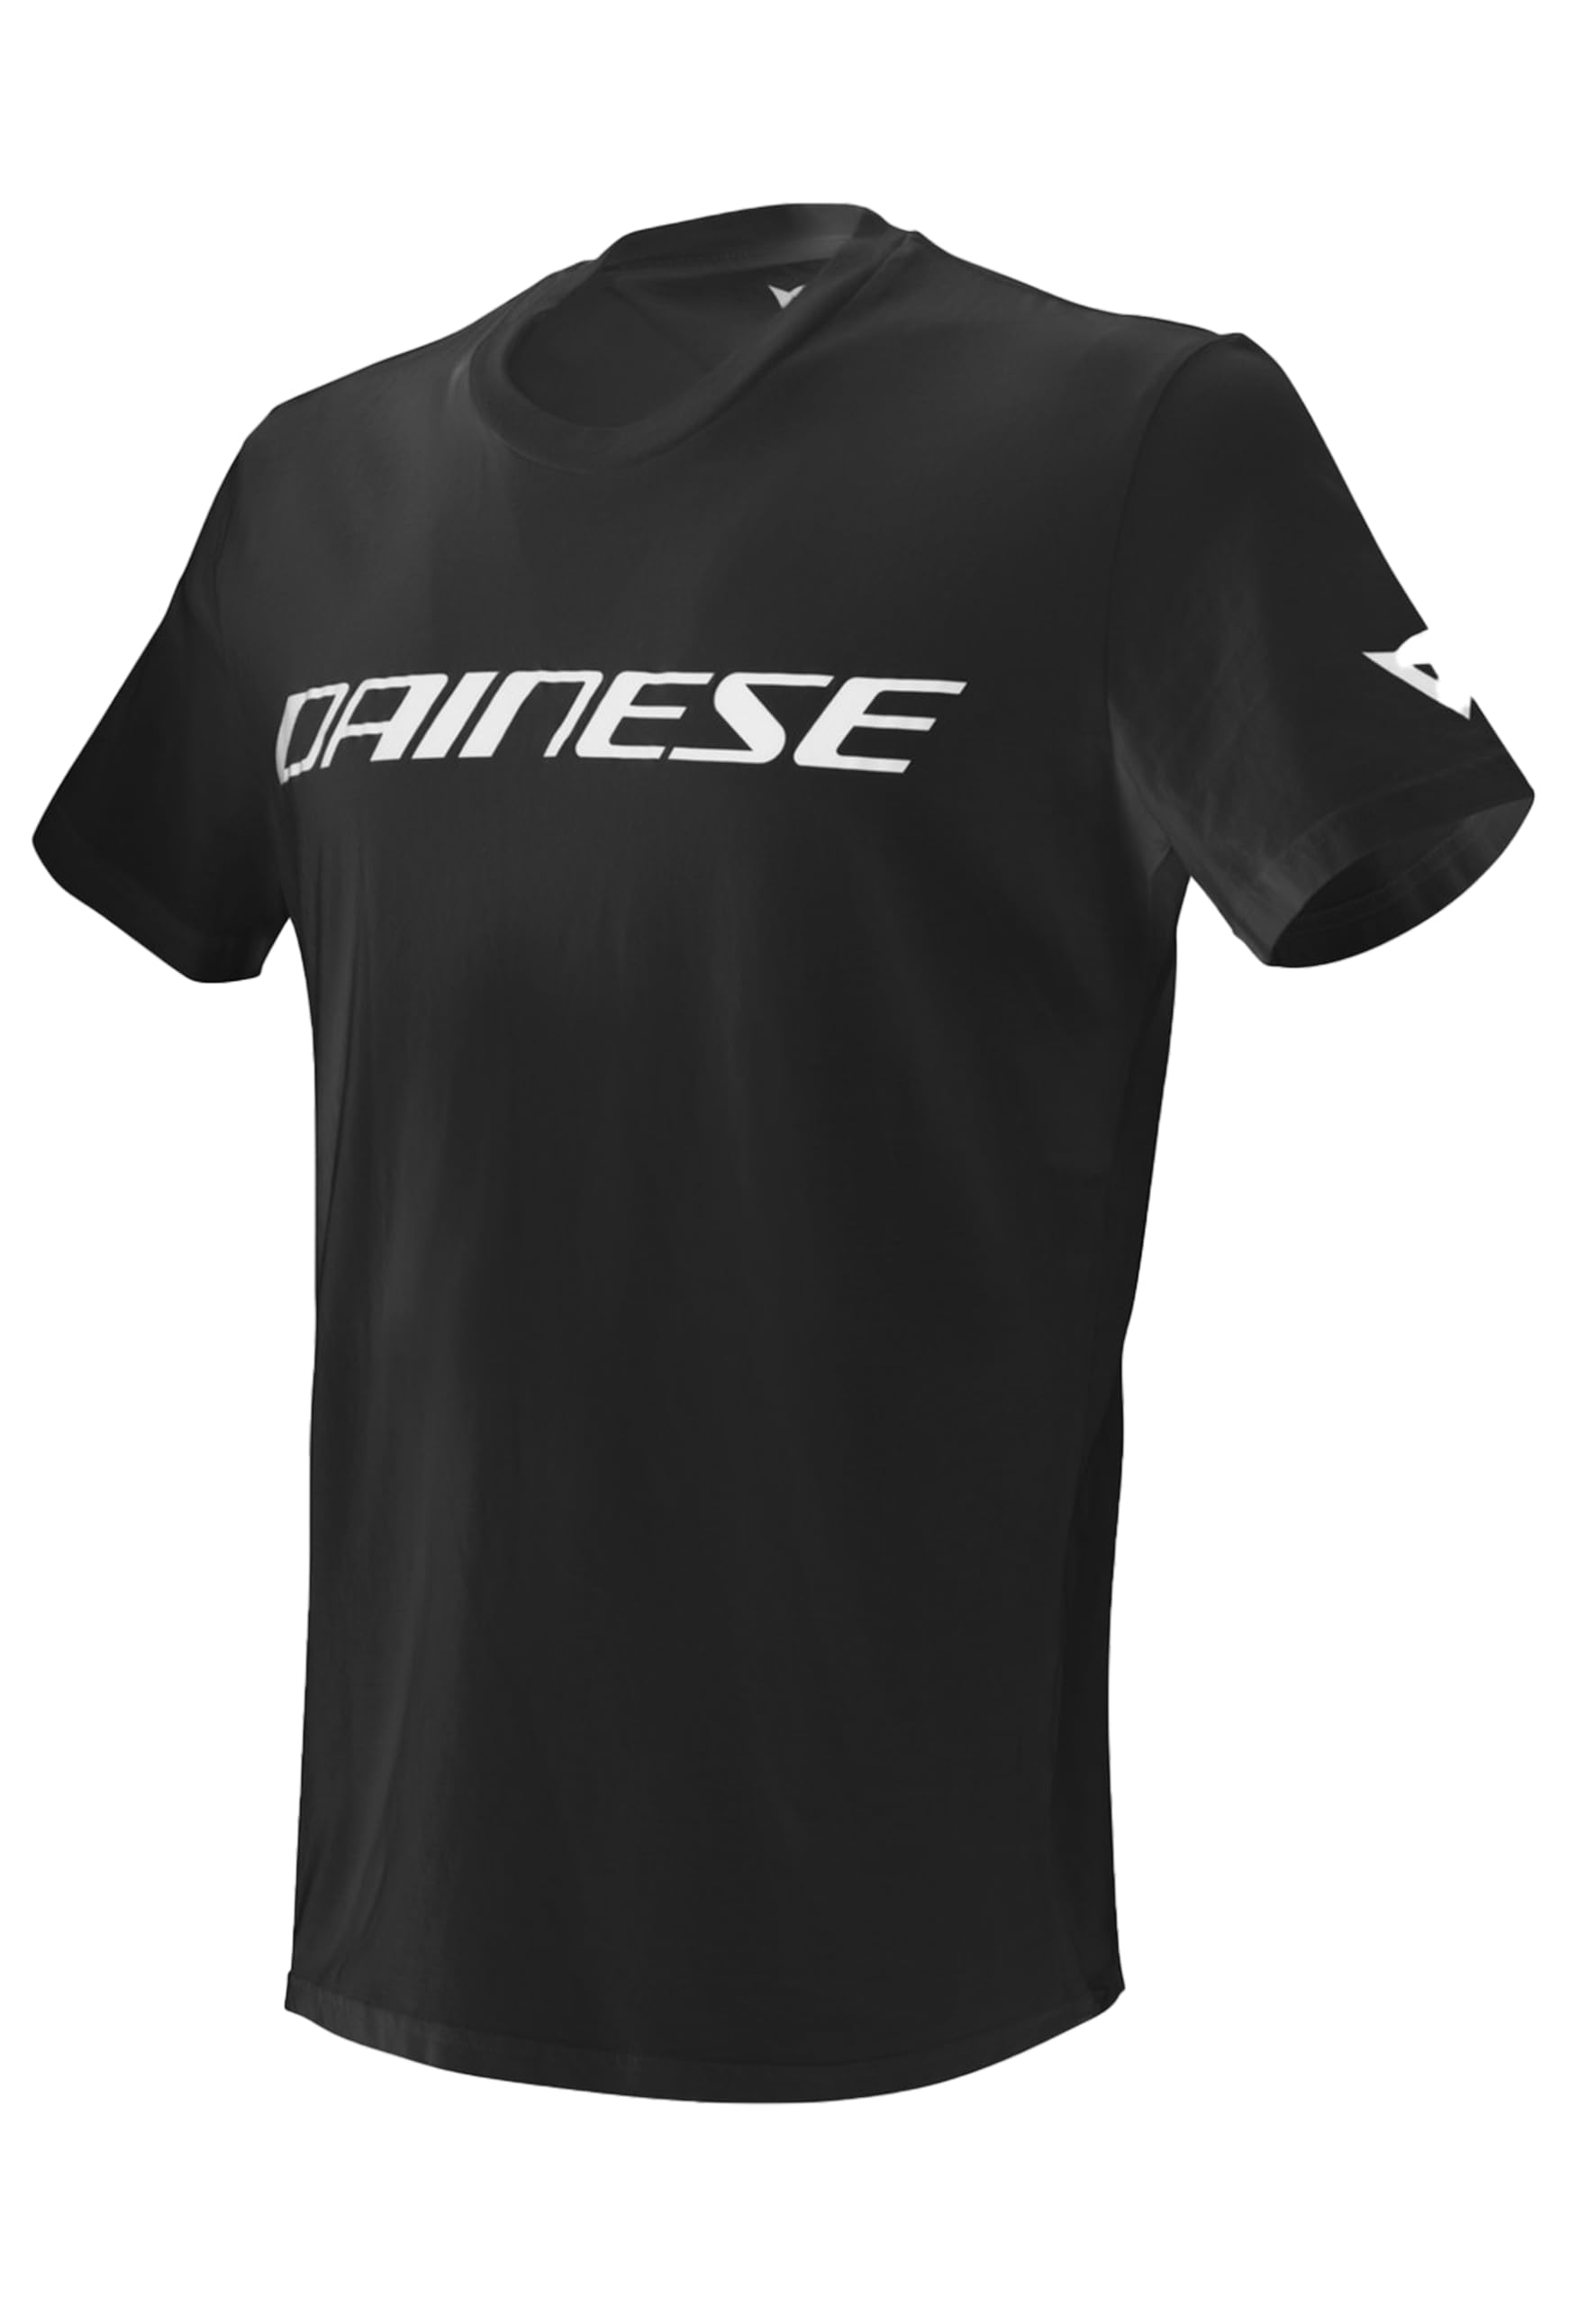 Dainese Unisex Erwachsene Dainese T-shirt T shirt, Schwarz/Weiss, S EU von Dainese